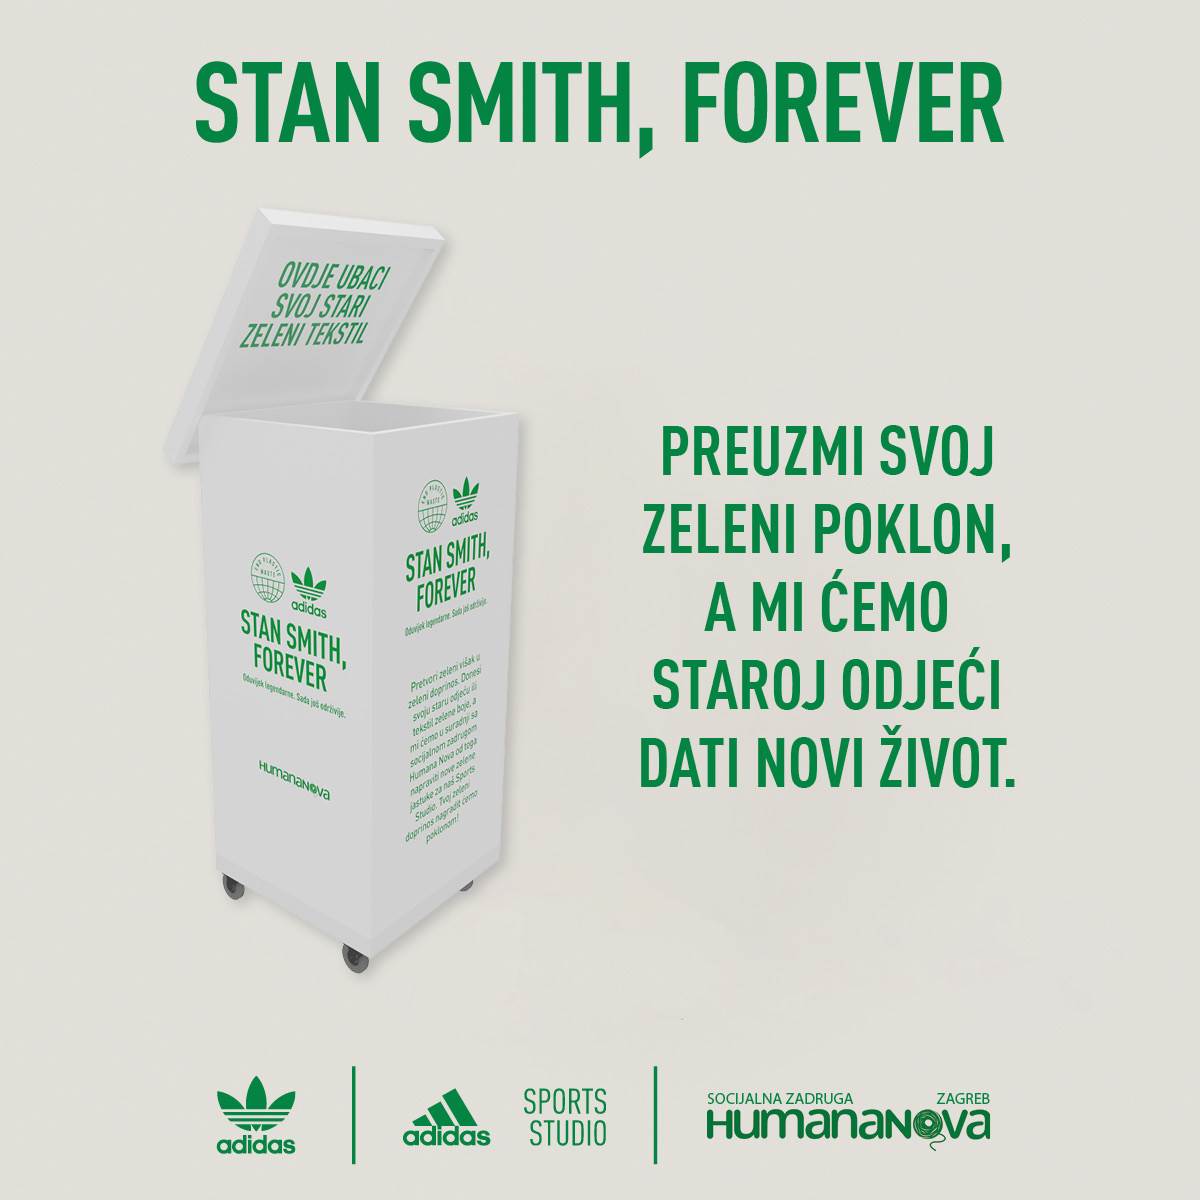 adidas i Humana Nova Zagreb zajedno u zelenoj akciji